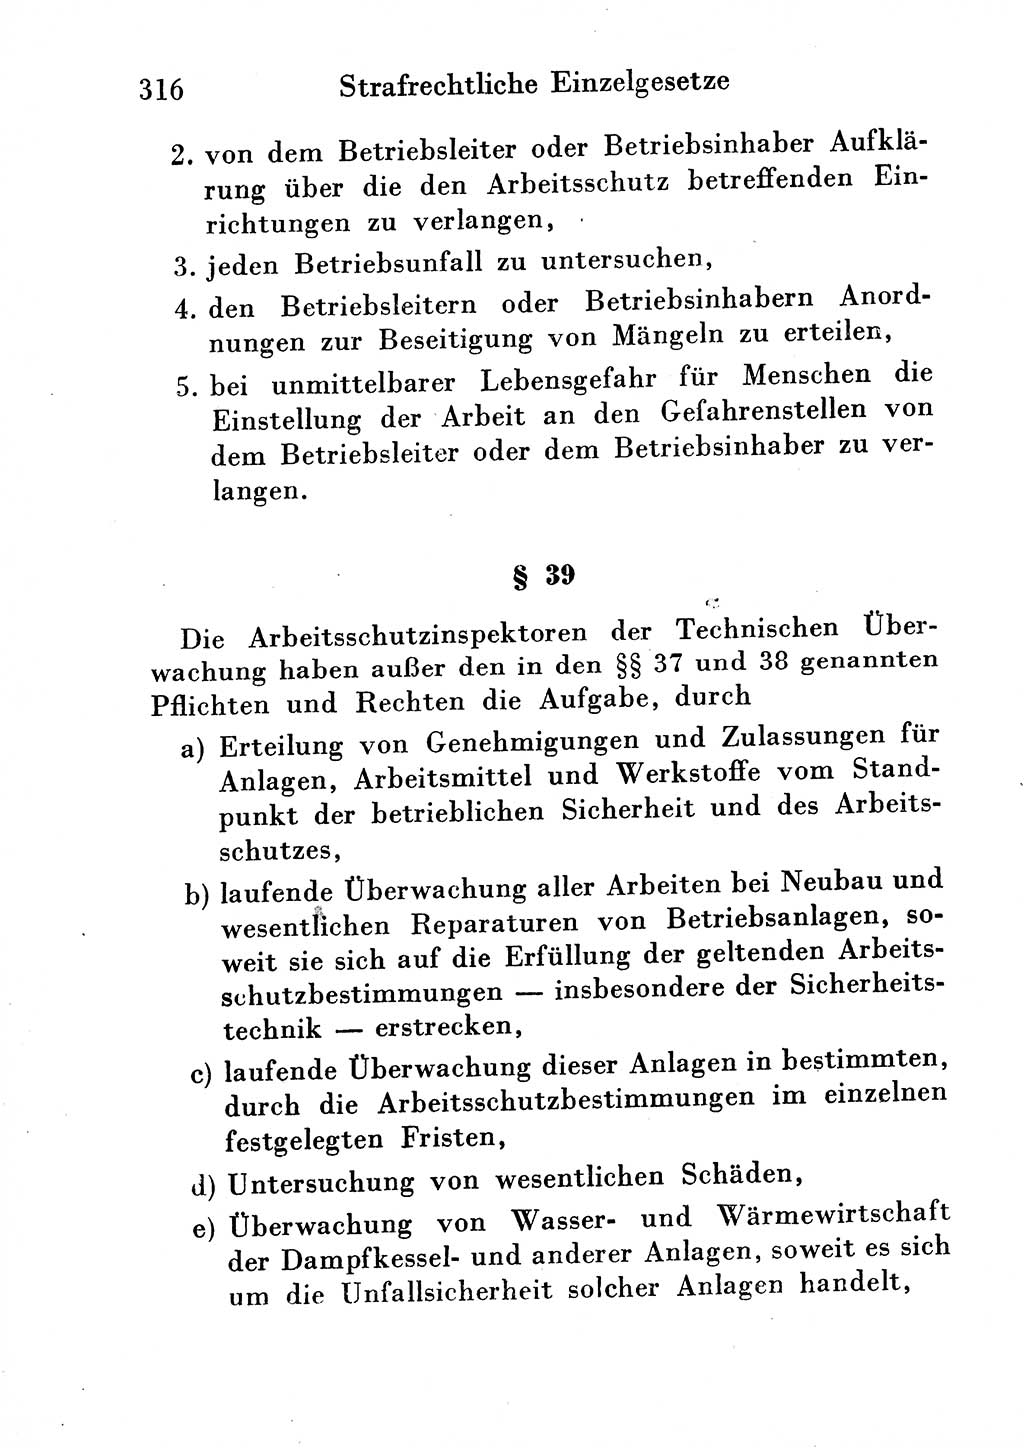 Strafgesetzbuch (StGB) und andere Strafgesetze [Deutsche Demokratische Republik (DDR)] 1954, Seite 316 (StGB Strafges. DDR 1954, S. 316)